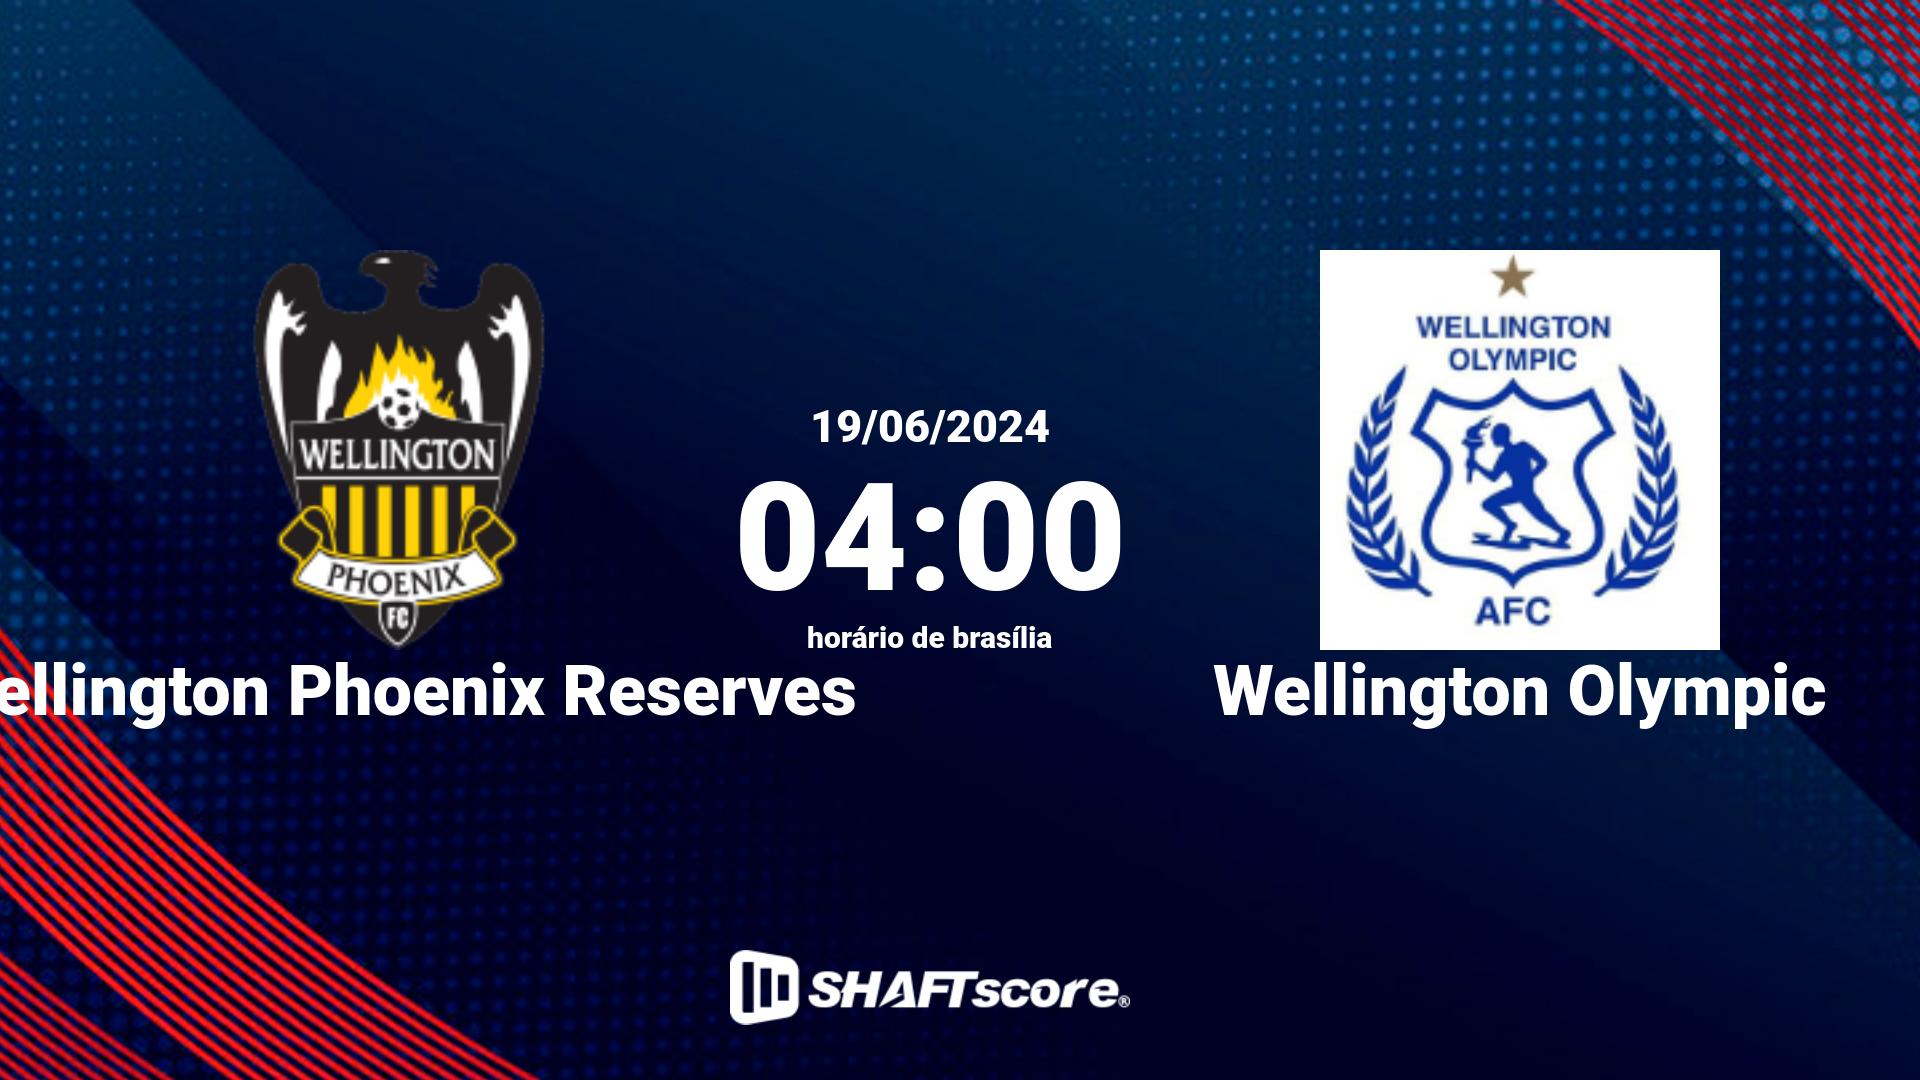 Estatísticas do jogo Wellington Phoenix Reserves vs Wellington Olympic 19.06 04:30